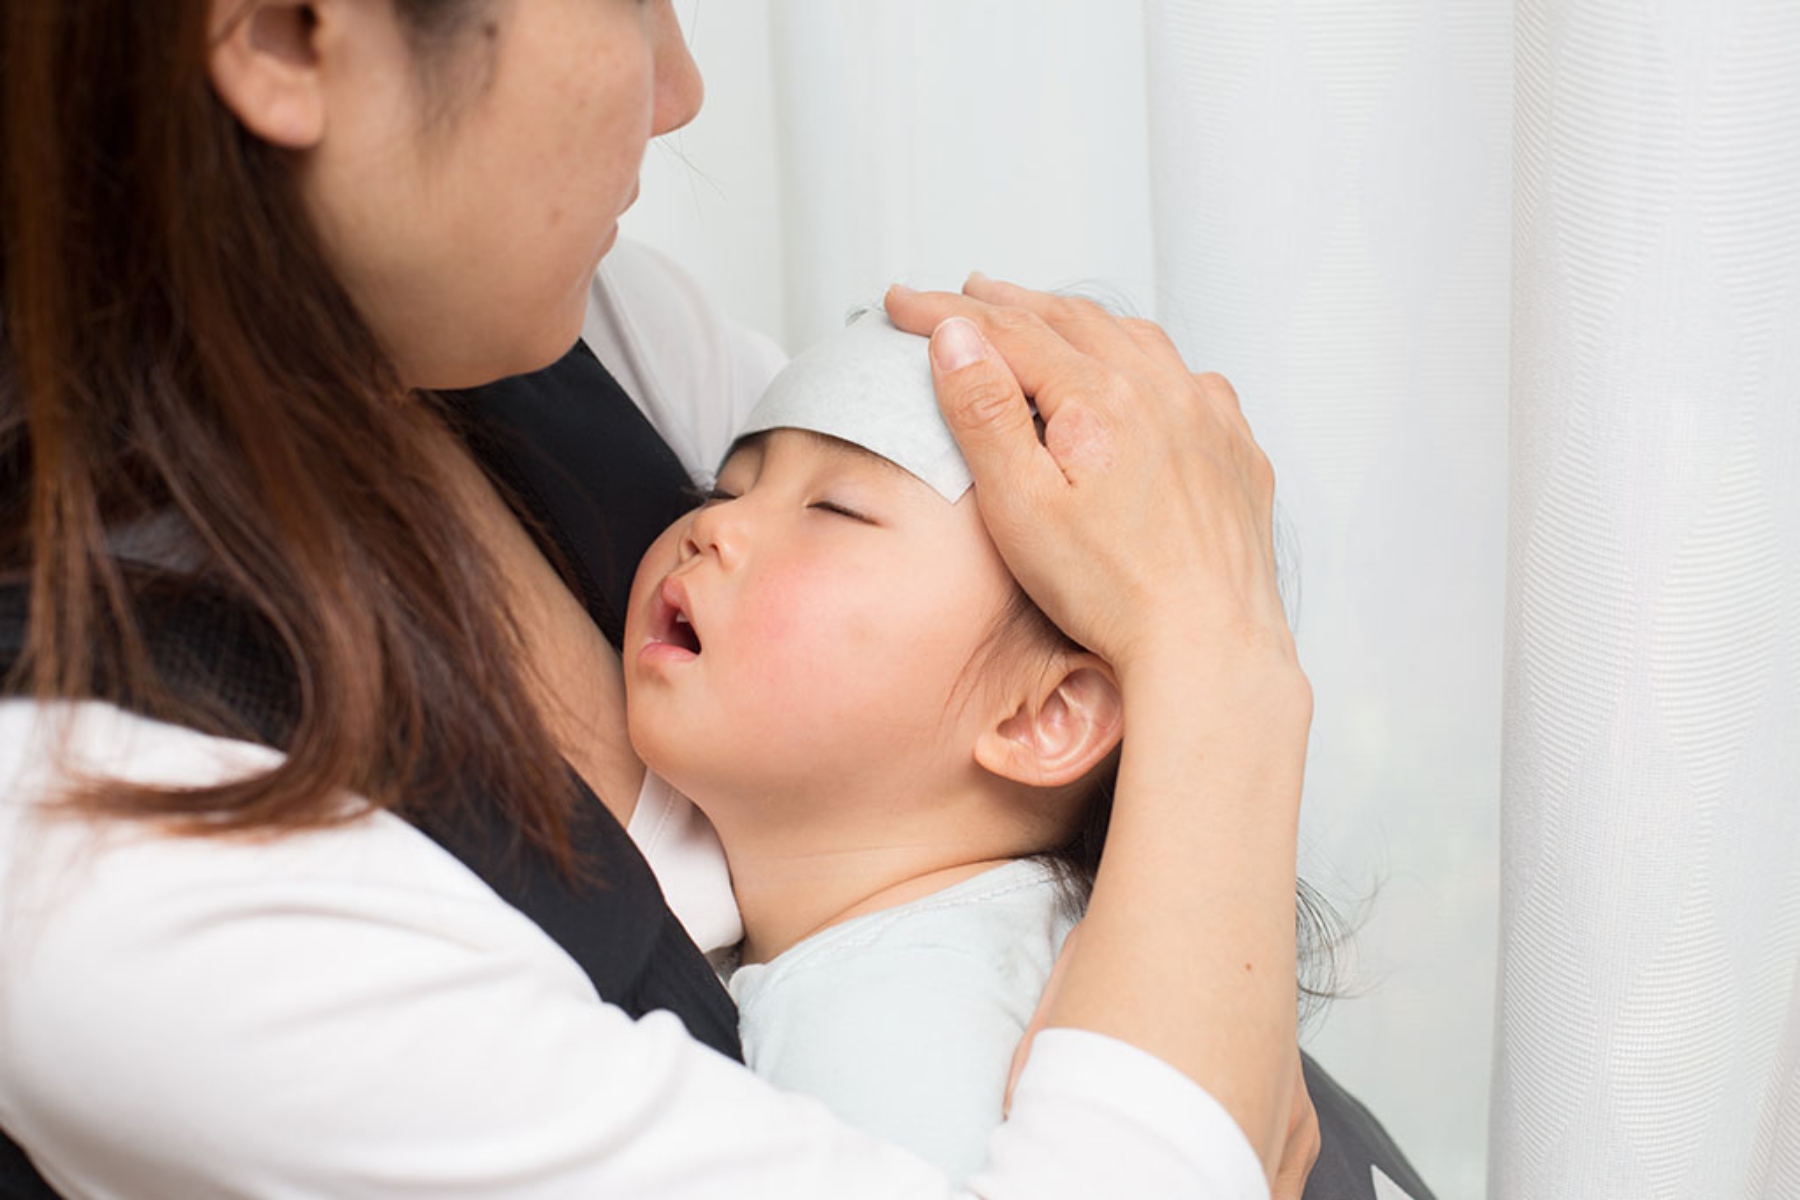 Εμπύρετοι σπασμοί: Τα γονίδια ίσως ευθύνονται για τους πυρετικούς σπασμούς στα παιδιά